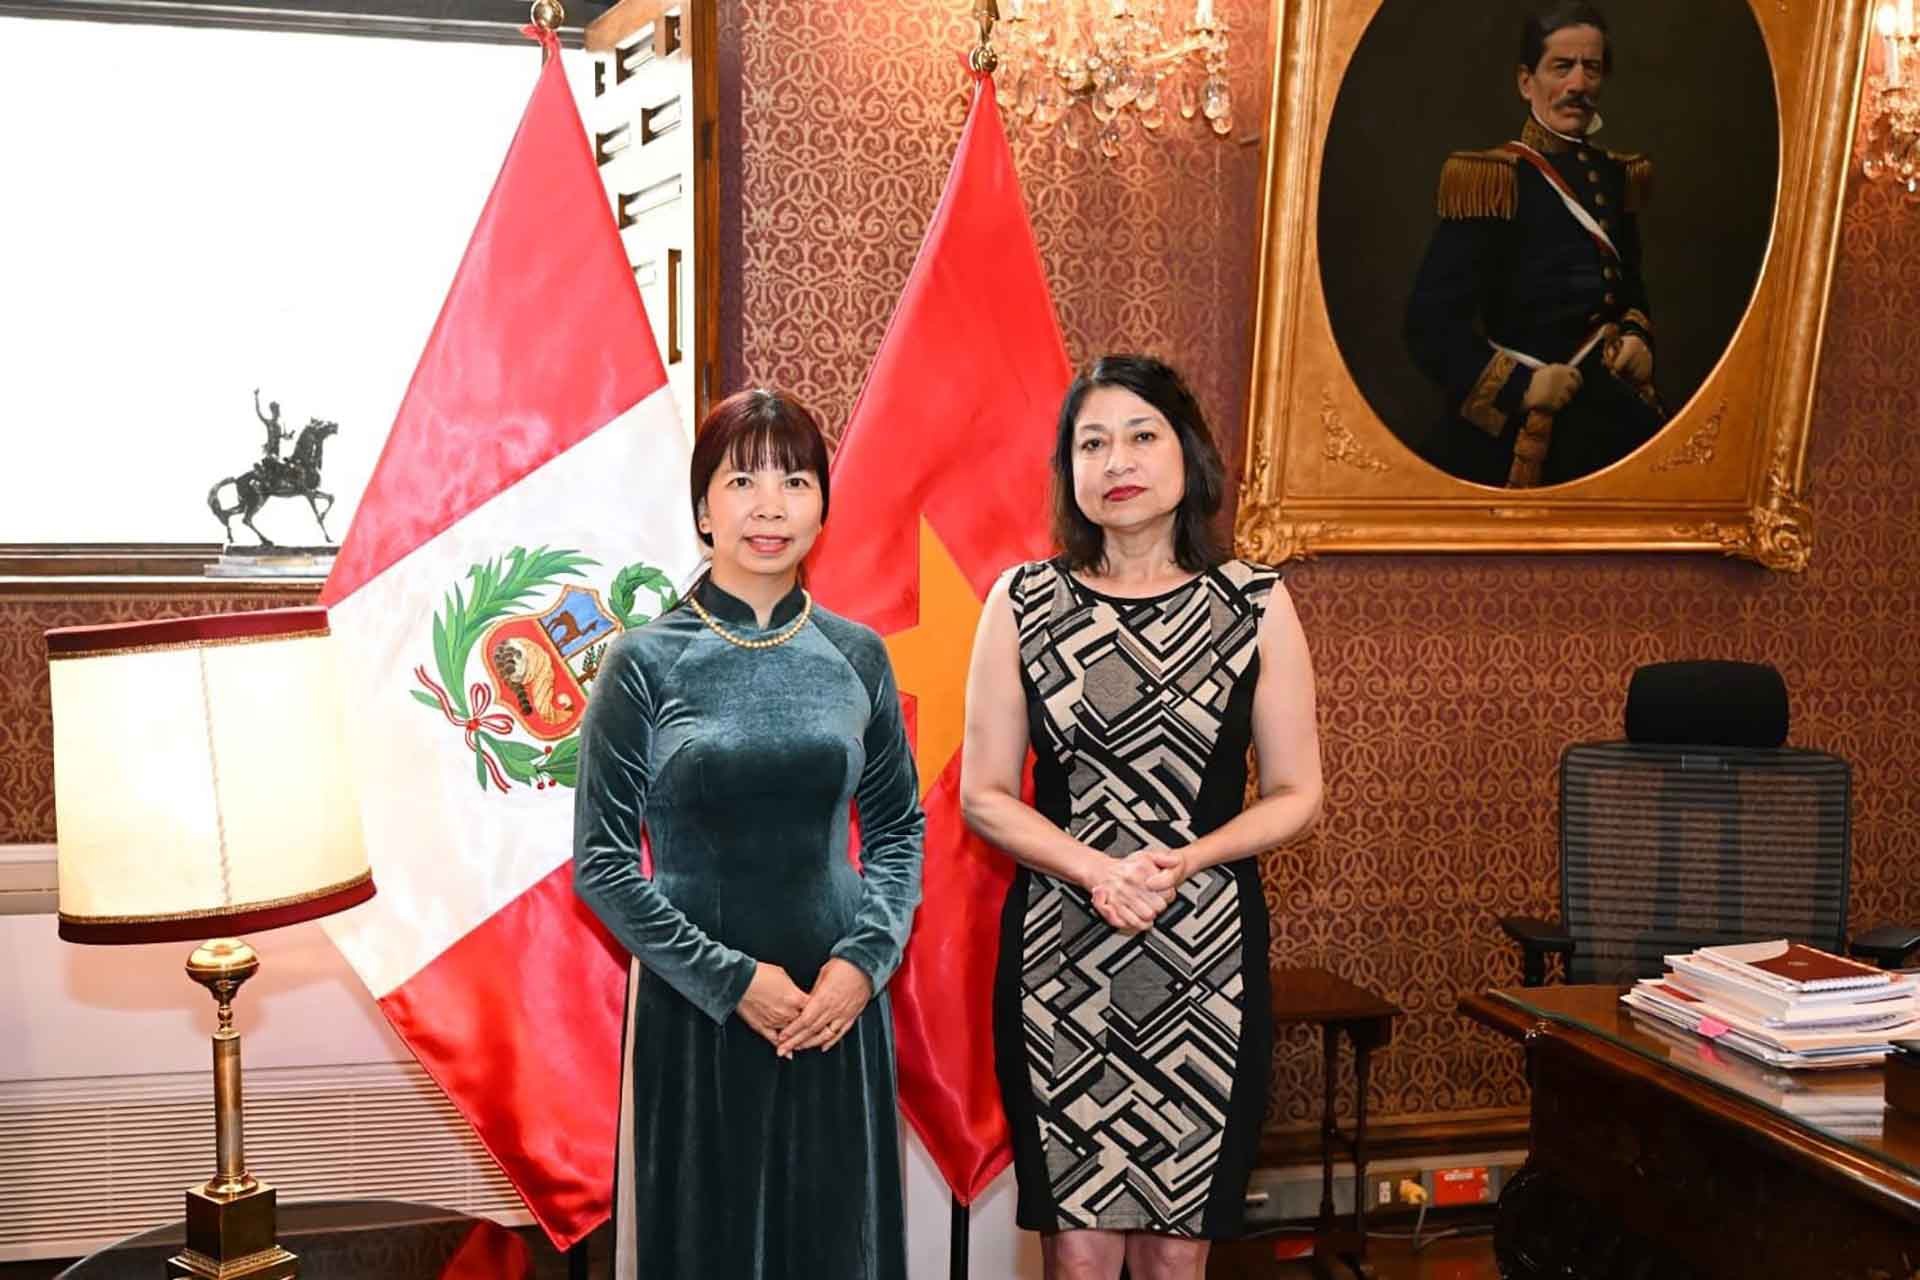 Tăng cường thúc đẩy quan hệ hữu nghị và hợp tác Việt Nam-Peru